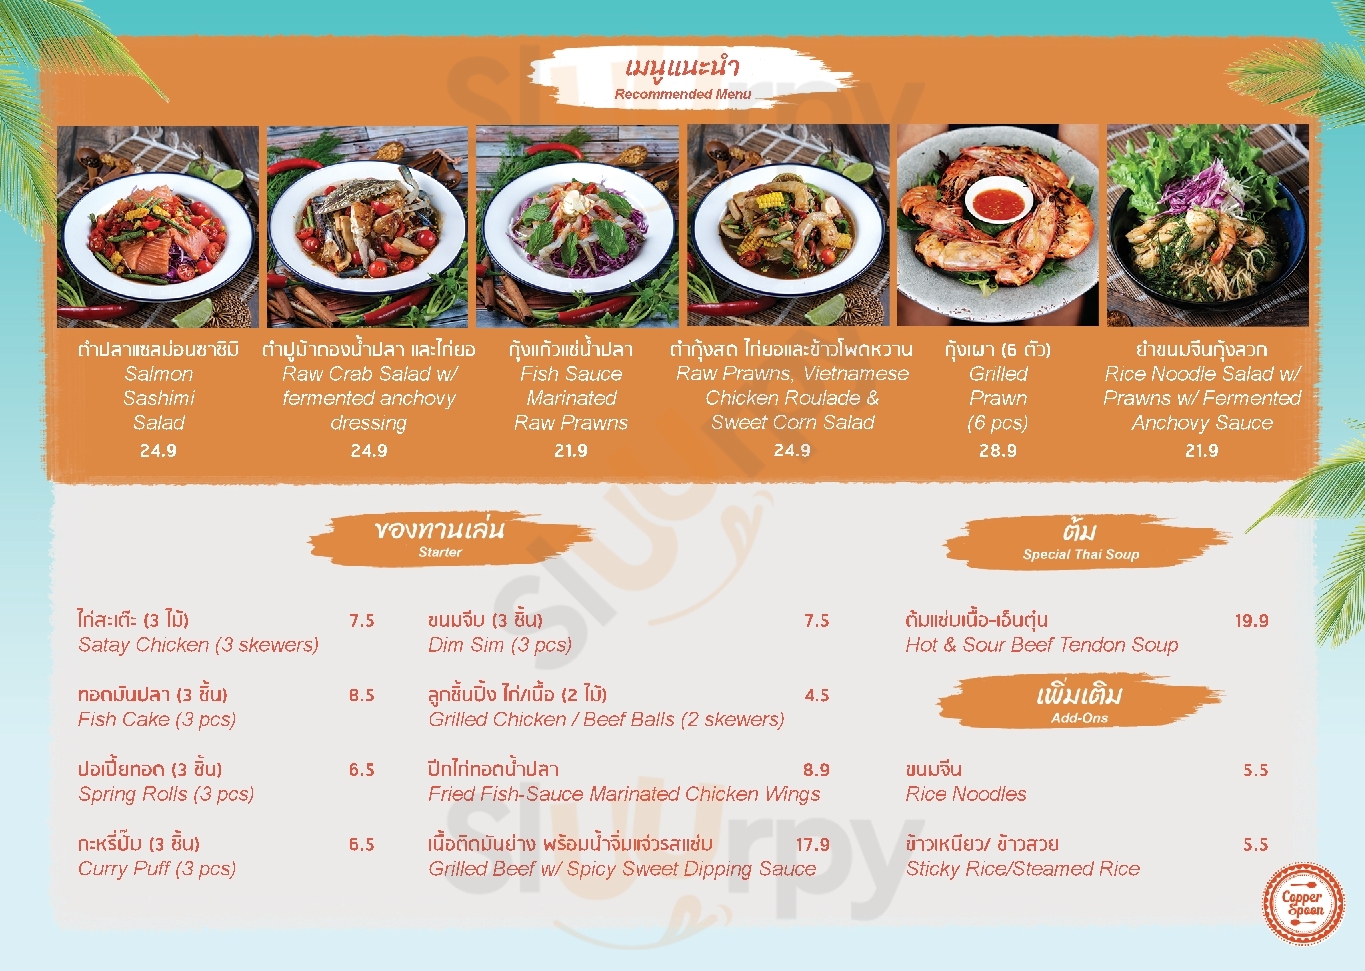 Copper Spoon Thai Restaurant And Bar Golden Beach Menu - 1